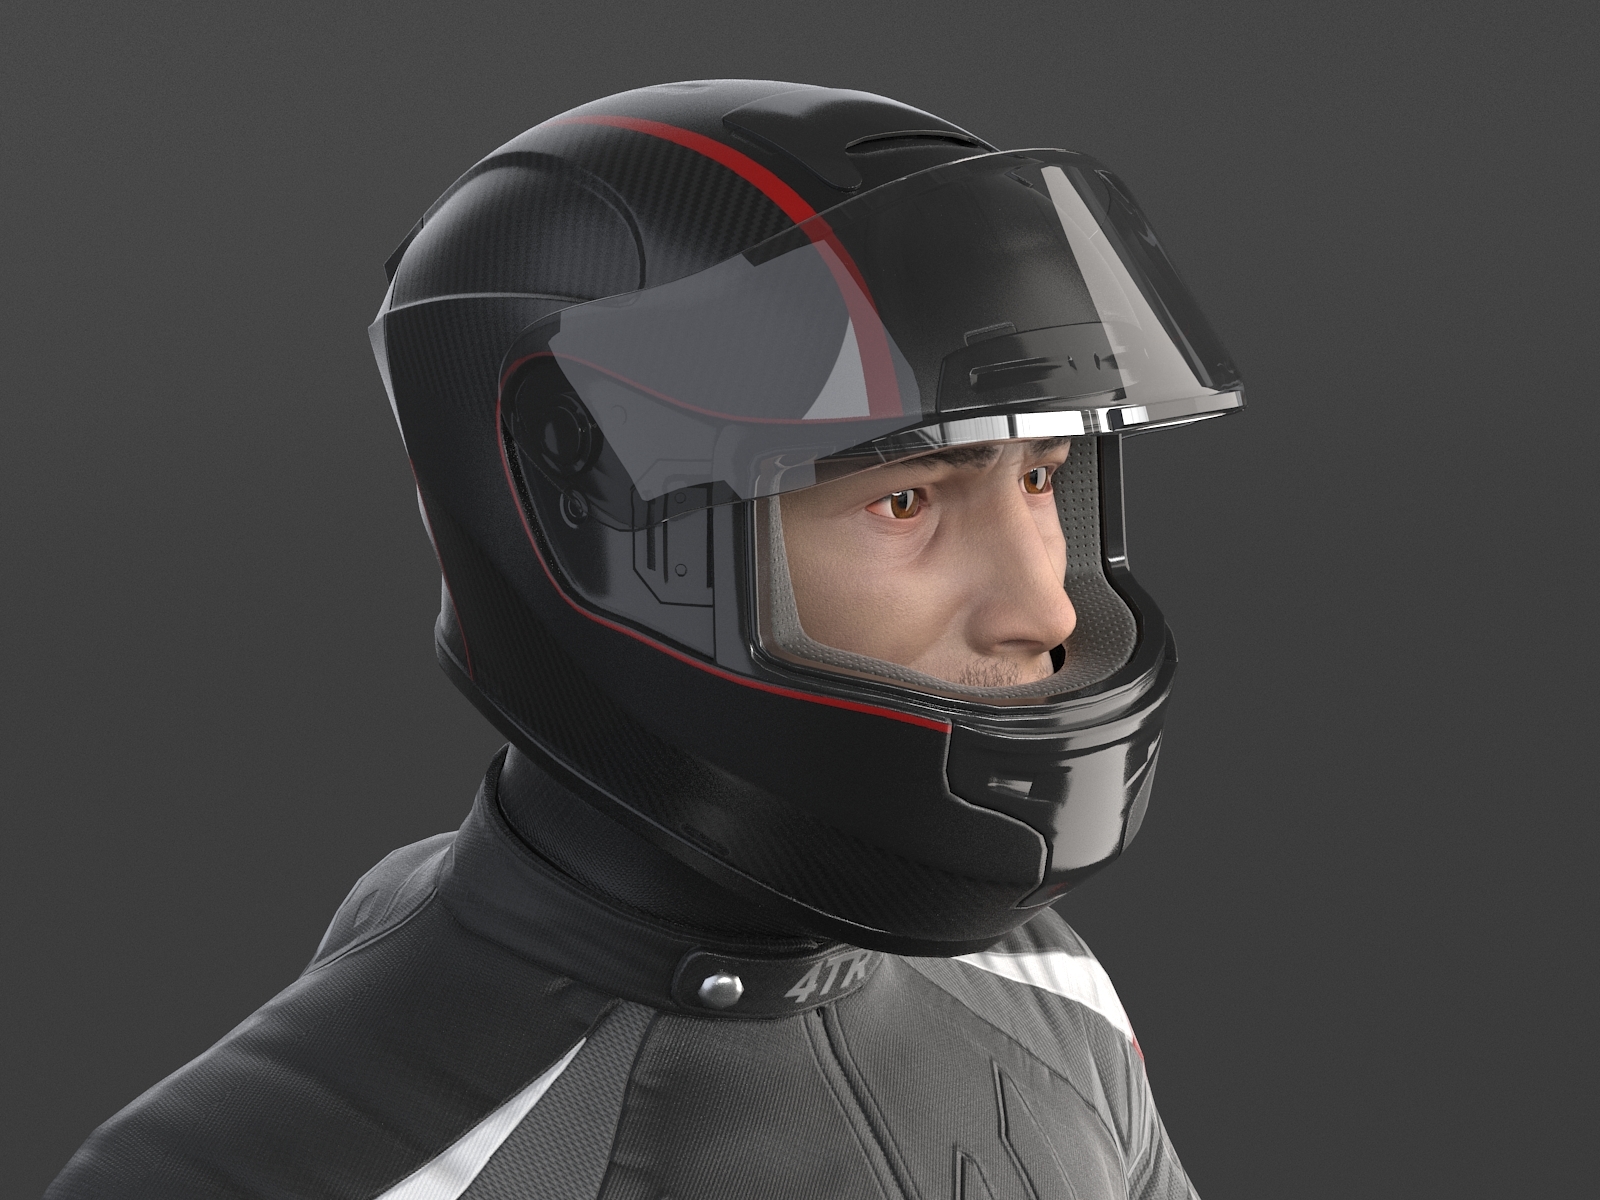 Biker motorcycle rider 3D model - TurboSquid 1149850